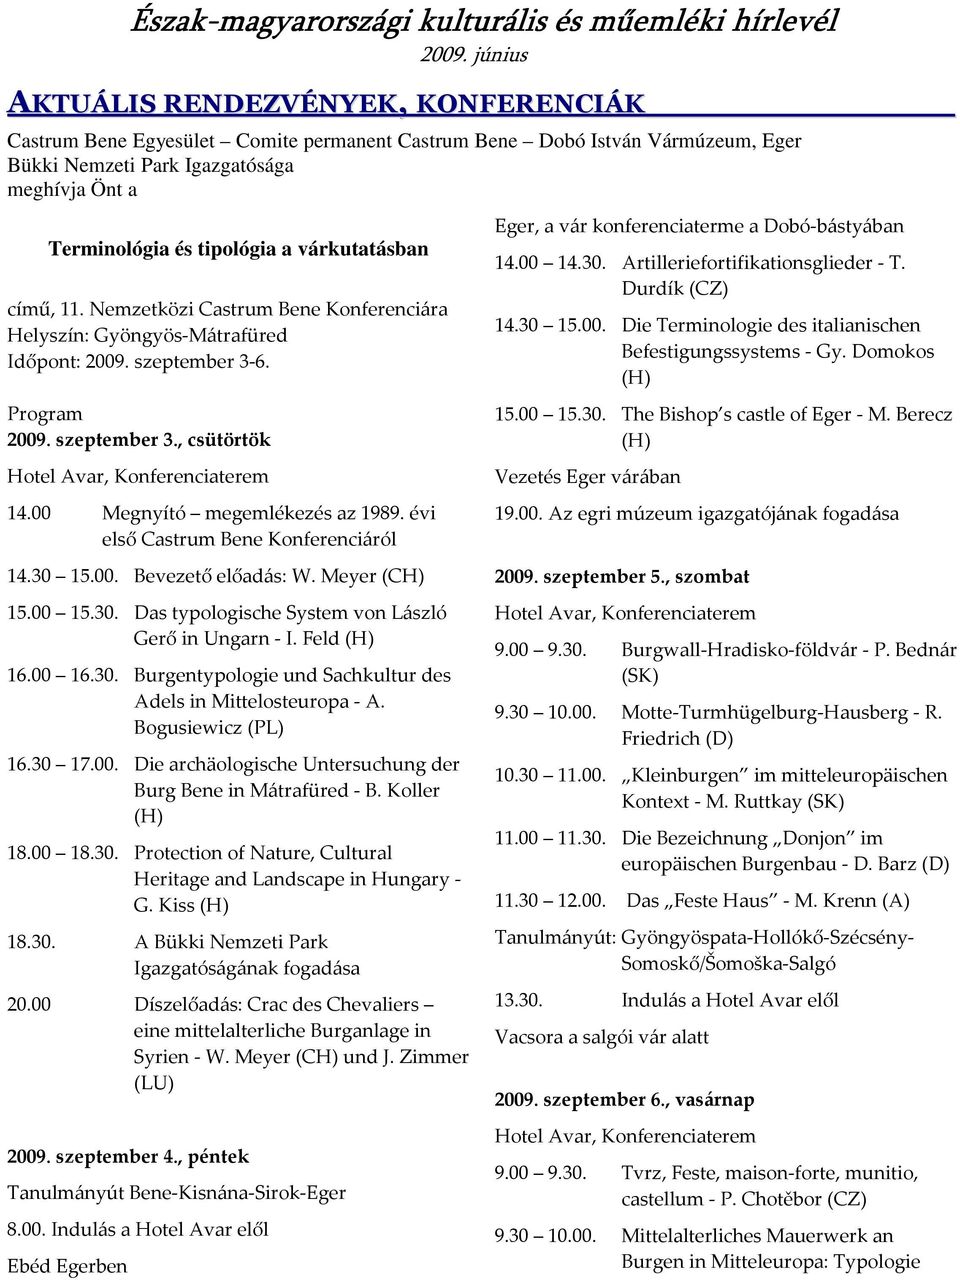 00 Megnyító megemlékezés az 1989. évi első Castrum Bene Konferenciáról 14.30 15.00. Bevezető előadás: W. Meyer (CH) 15.00 15.30. Das typologische System von László Gerő in Ungarn - I. Feld (H) 16.